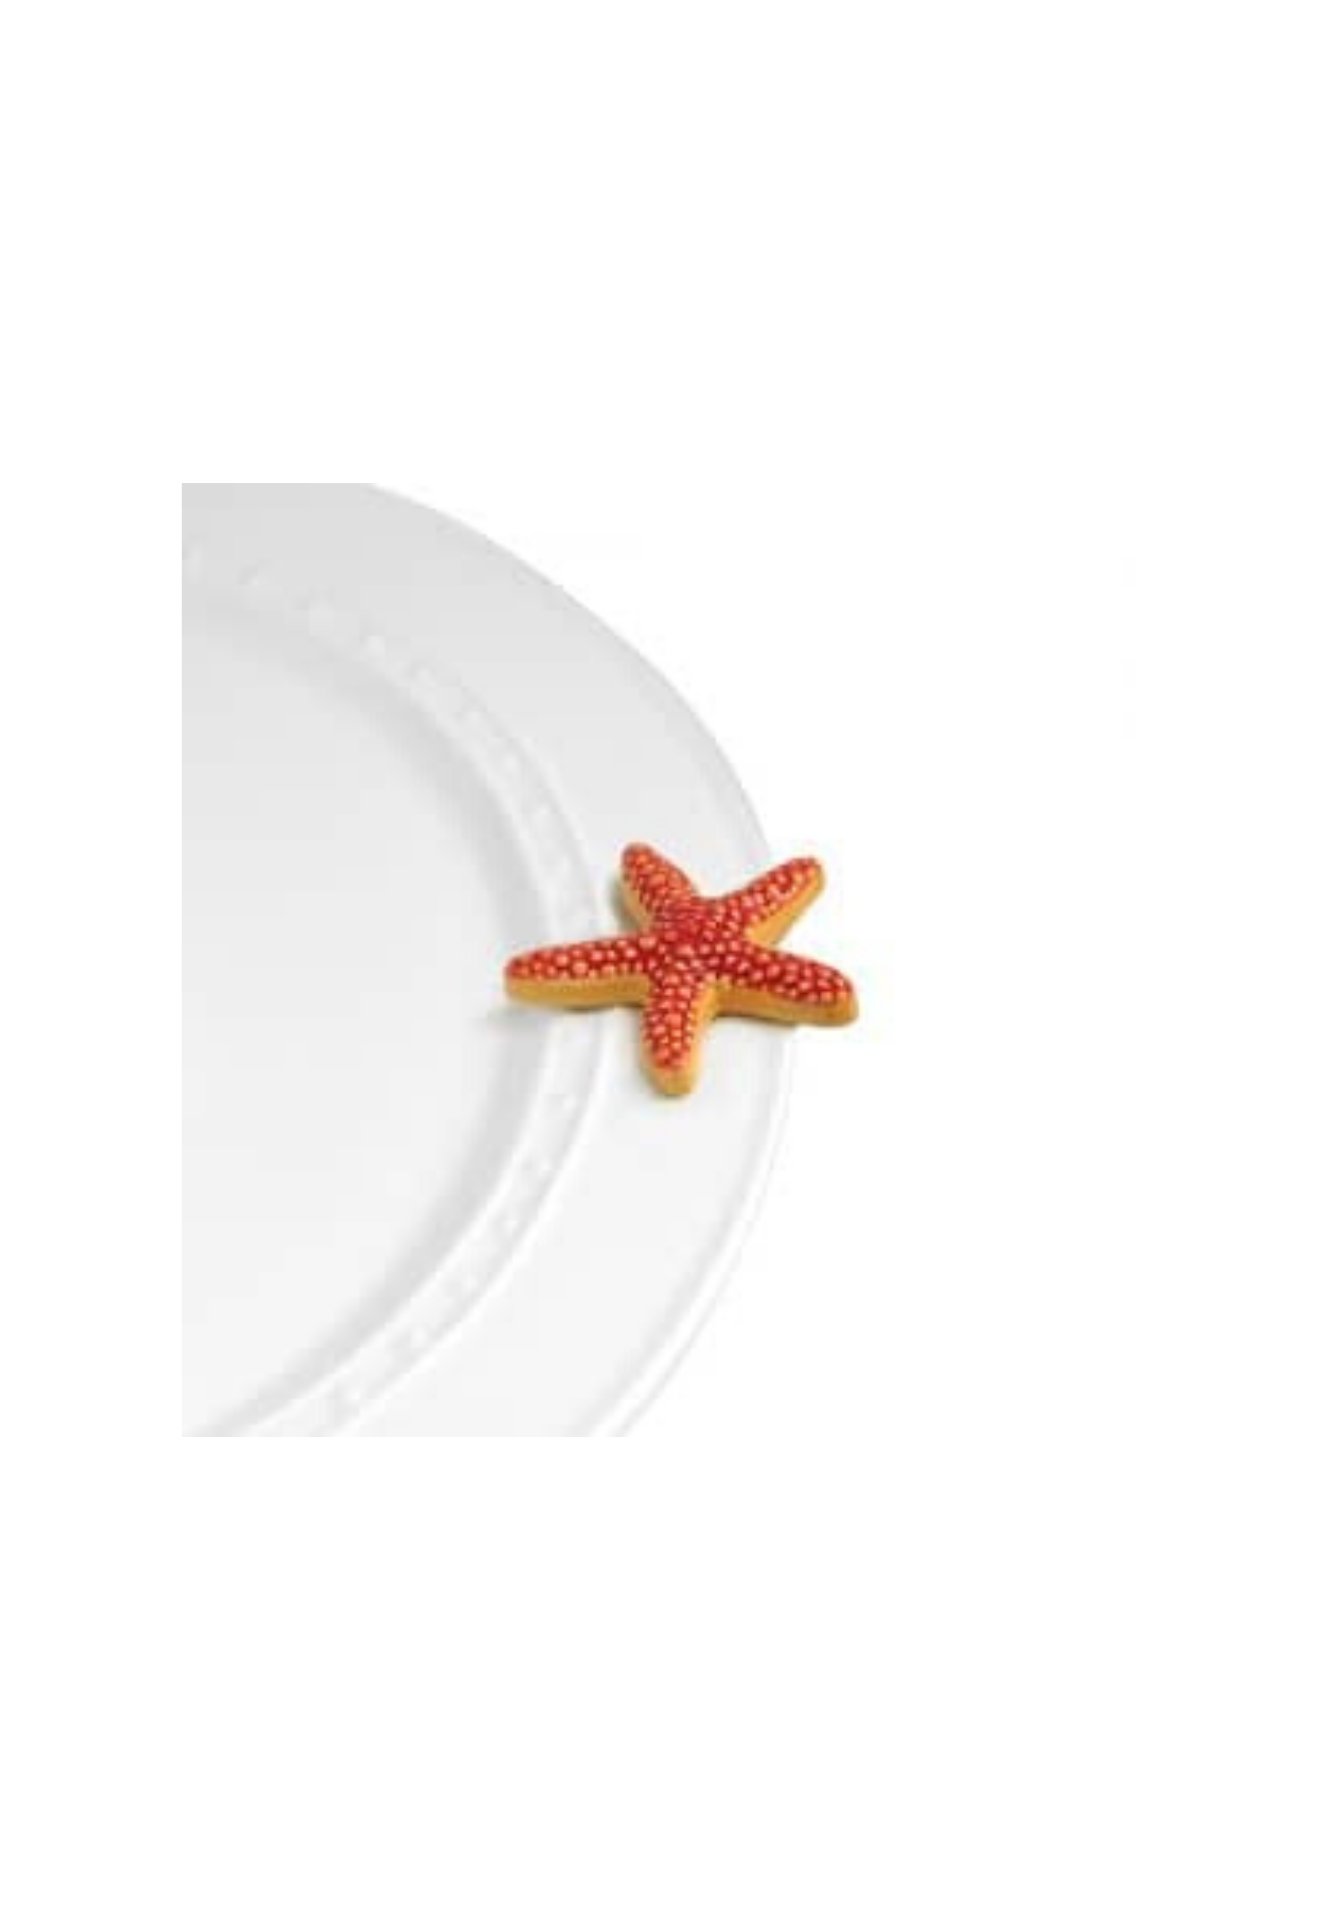 sea star (starfish) A66